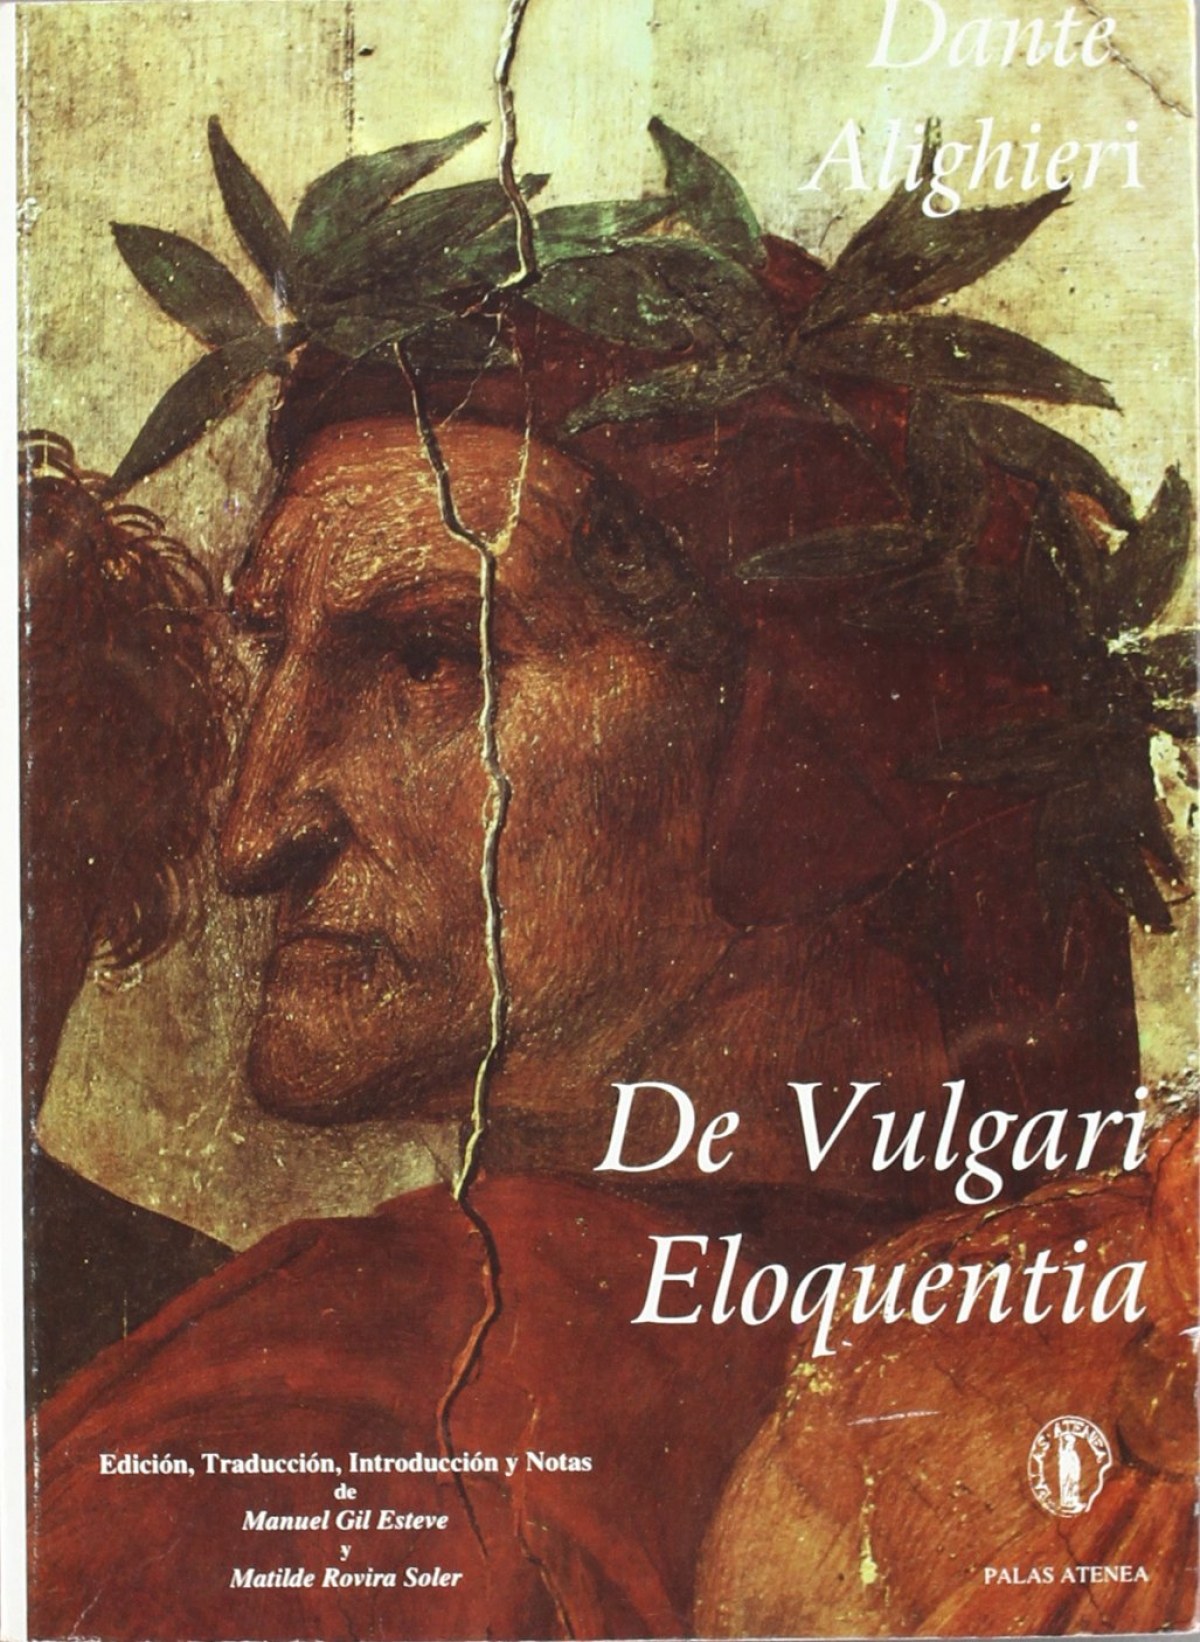 De Vulgari Eloquentia - Alighieri, Dante